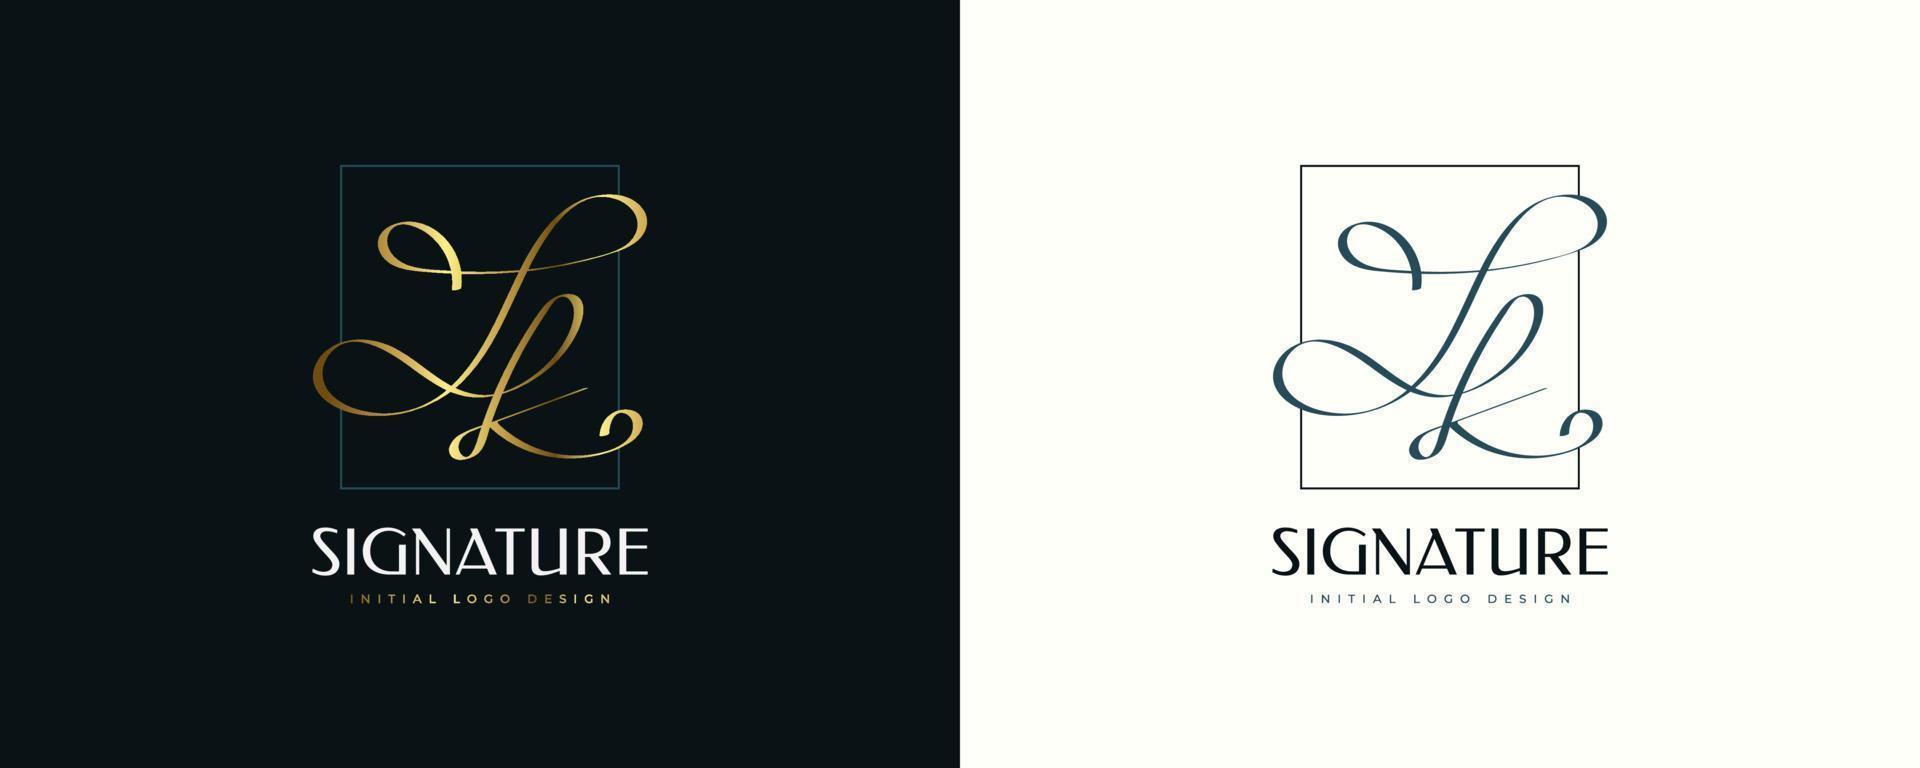 logo iniziale j e k design in elegante stile di scrittura a mano dorata. logo o simbolo della firma jk per l'identità del marchio di matrimonio, moda, gioielli, boutique e business vettore